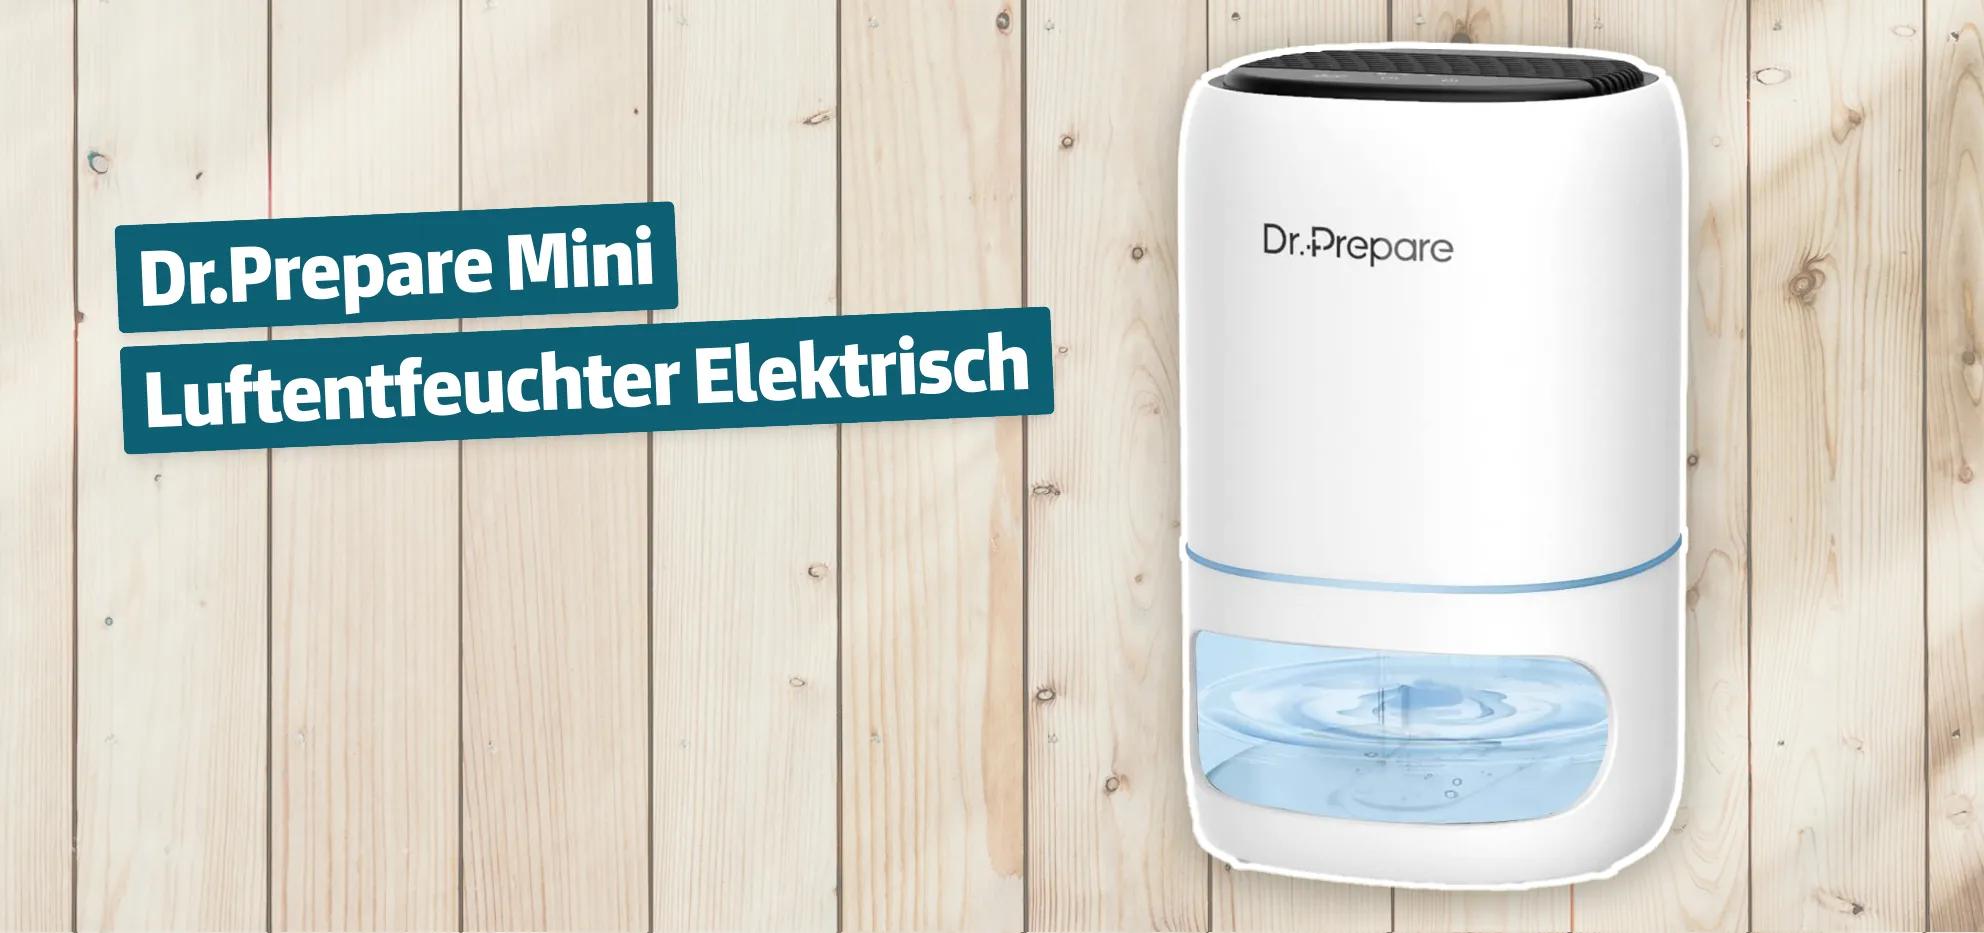 Dr.Prepare Mini Luftentfeuchter Elektrisch Testbericht & Erfahrungen